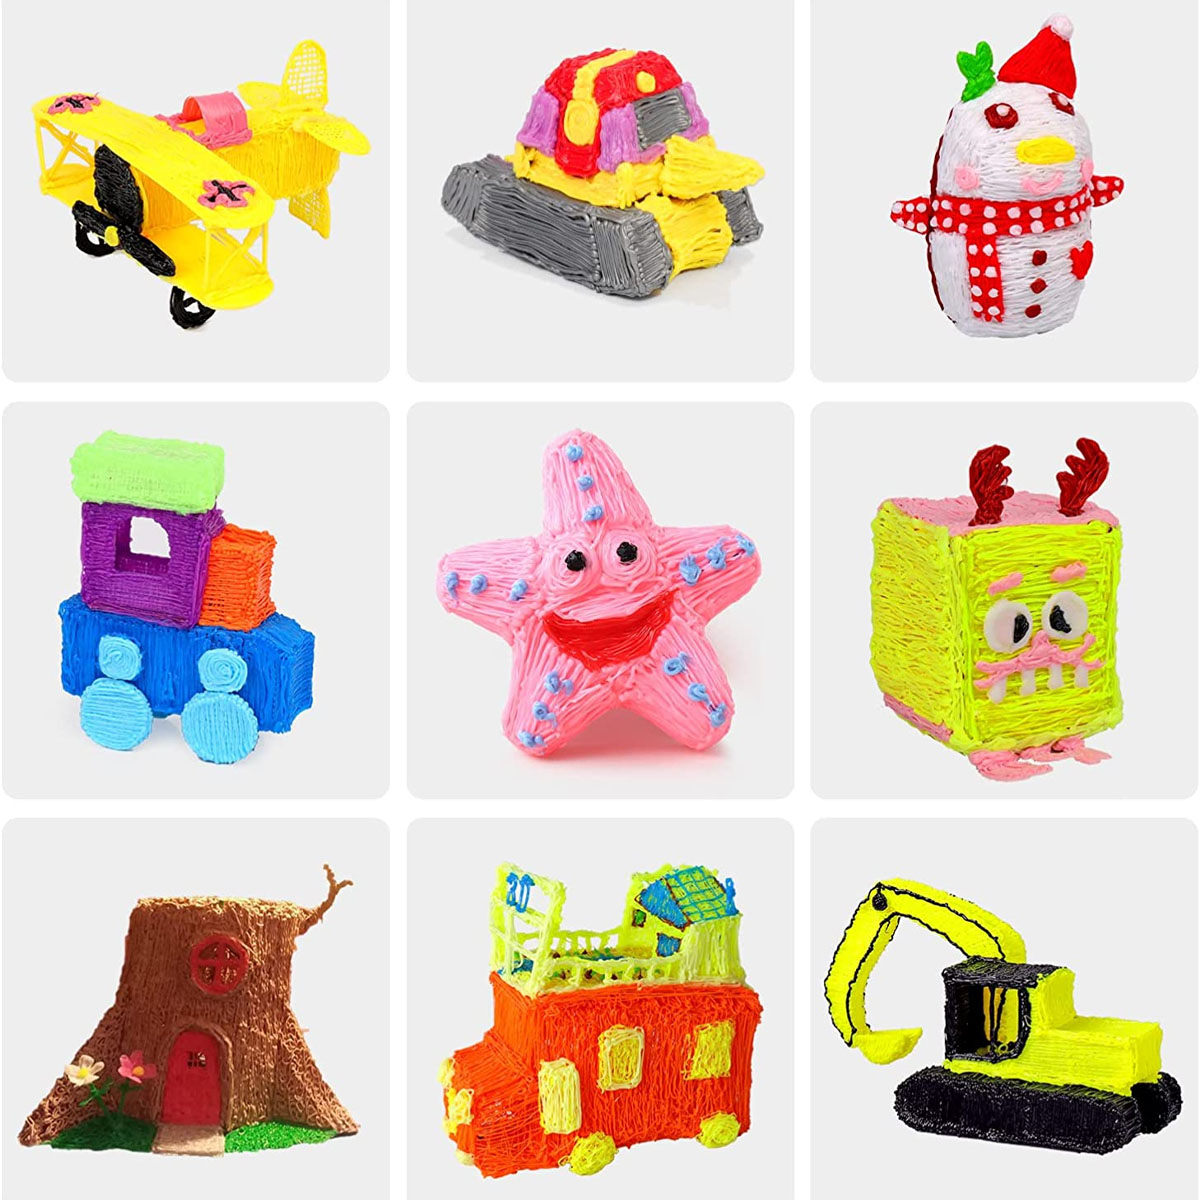 KIND JA 3D 3D Lustiges für Drucker Erwachsene, Kinder 3D DIY Graffiti, Spielzeug und Stift, Drucker